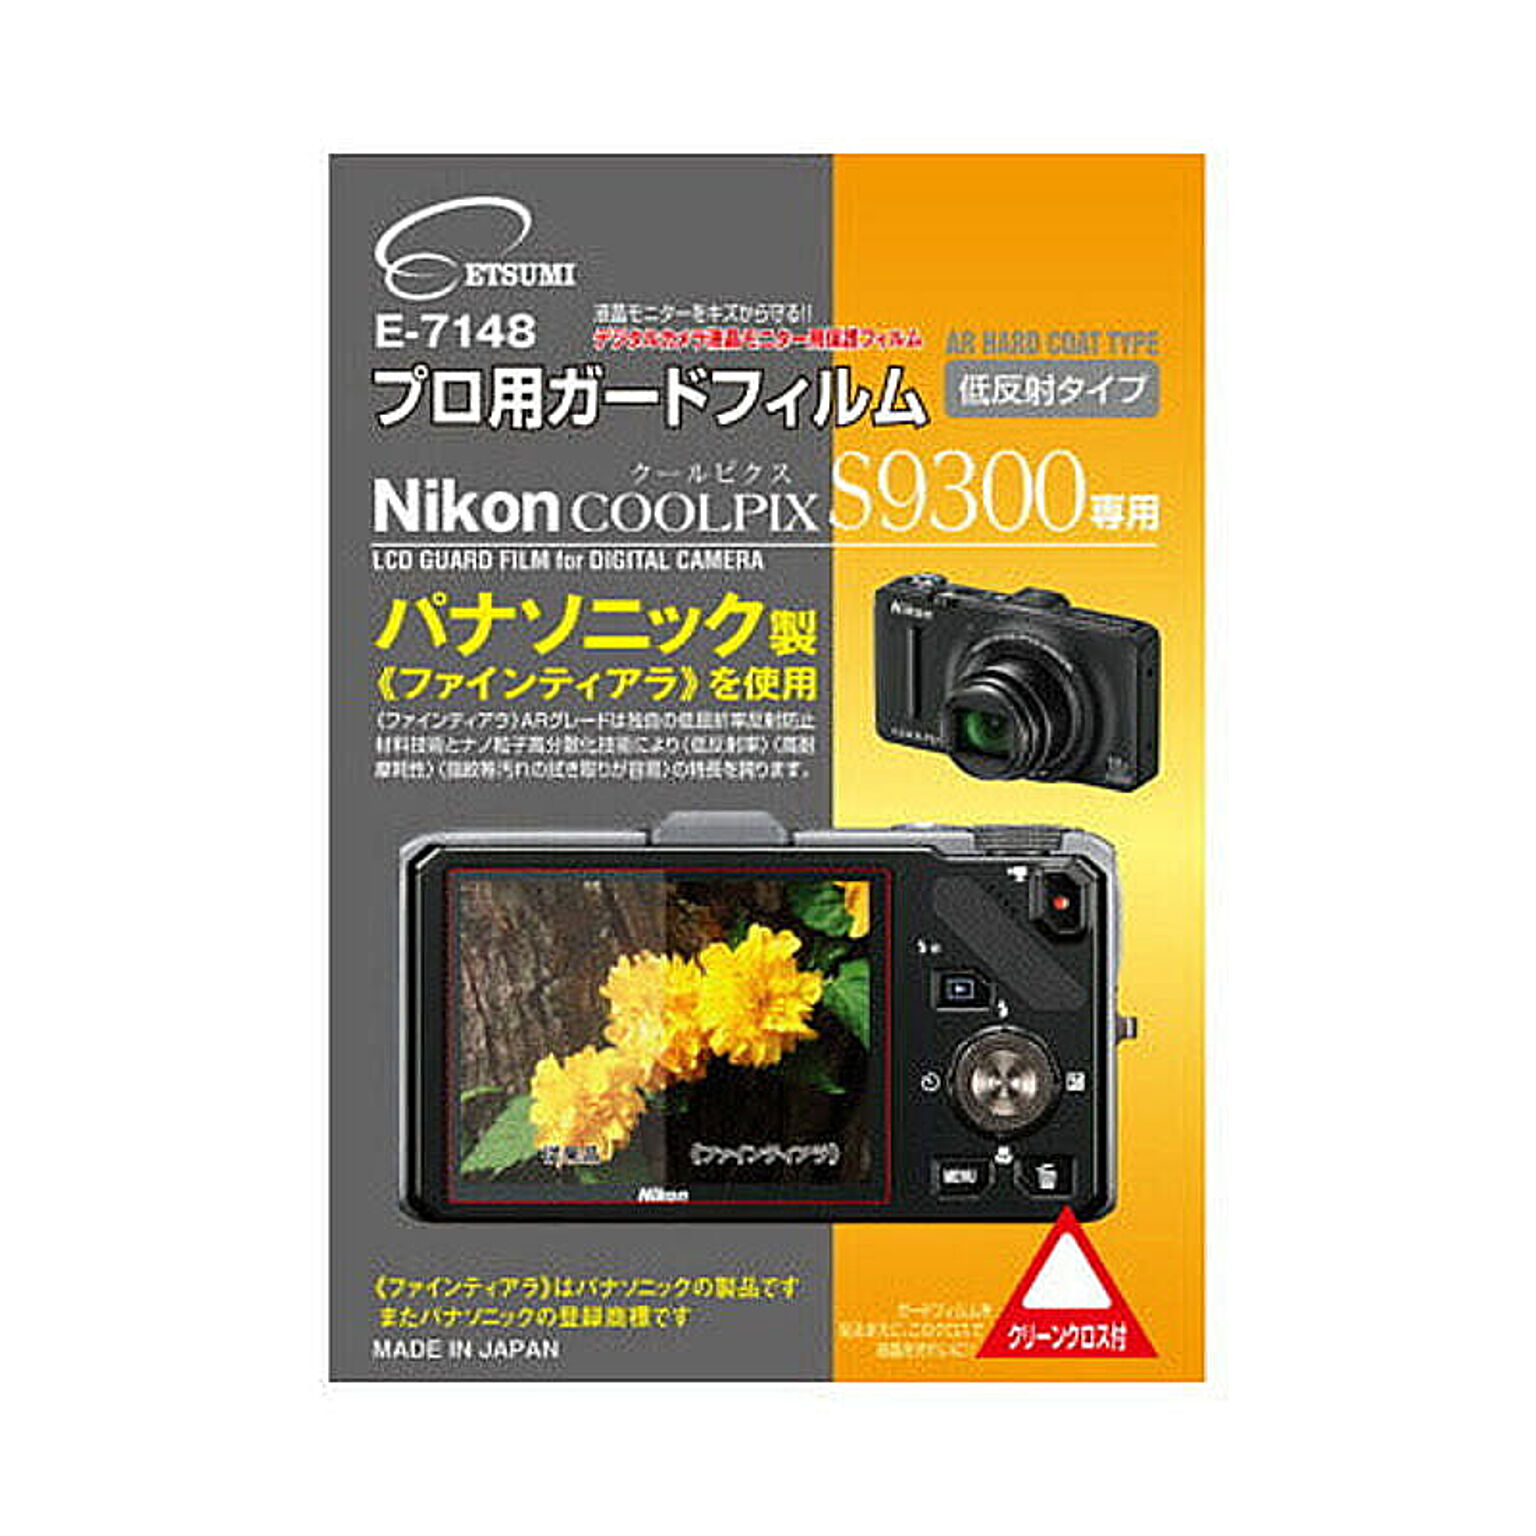 エツミ プロ用ガードフィルムAR Nikon COOLPIX S9300専用 E-7148 管理No. 4975981714894